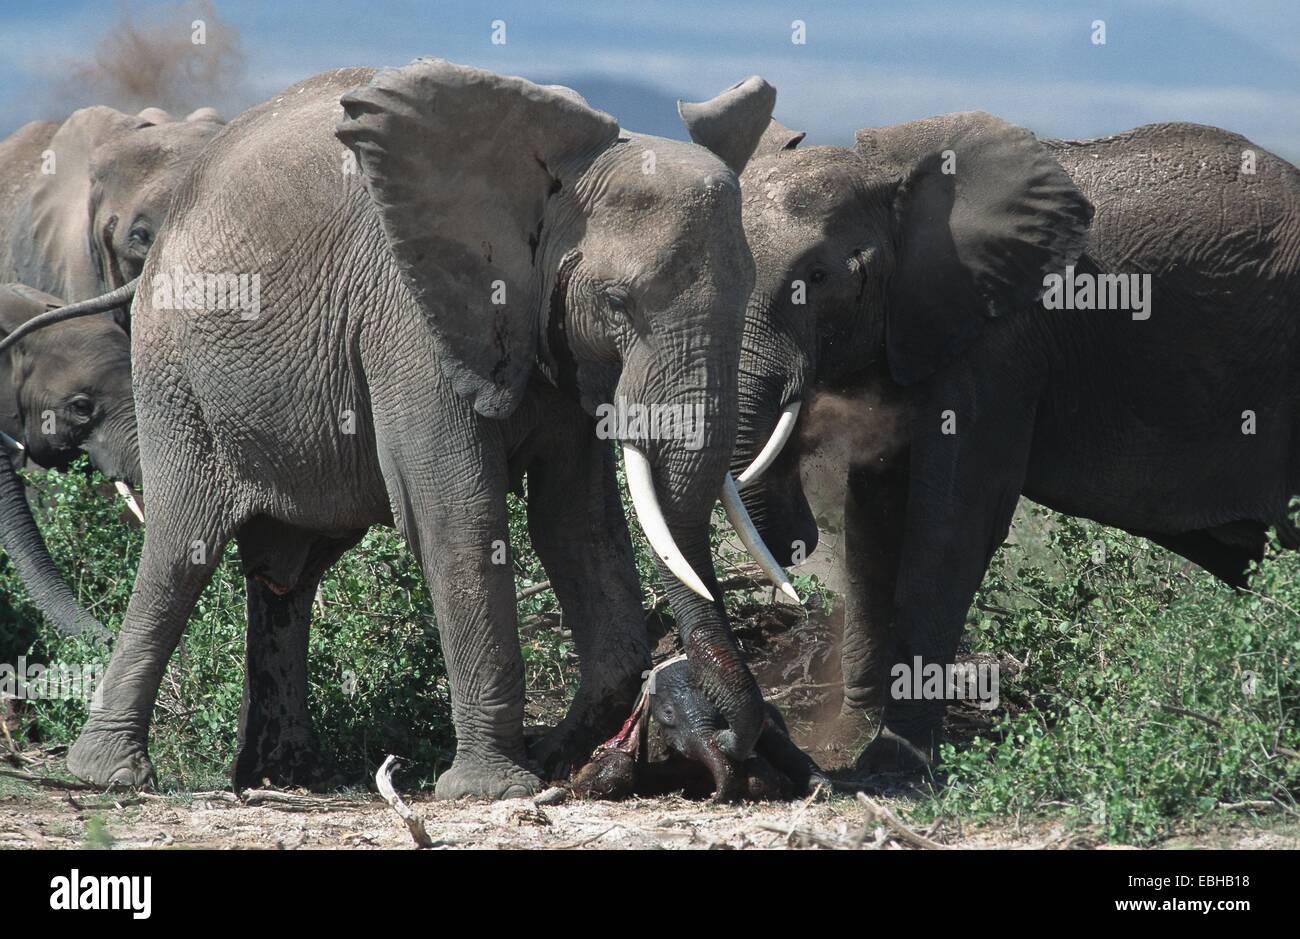 Elefante africano (Loxodonta africana), tías con la pantorrilla. Foto de stock